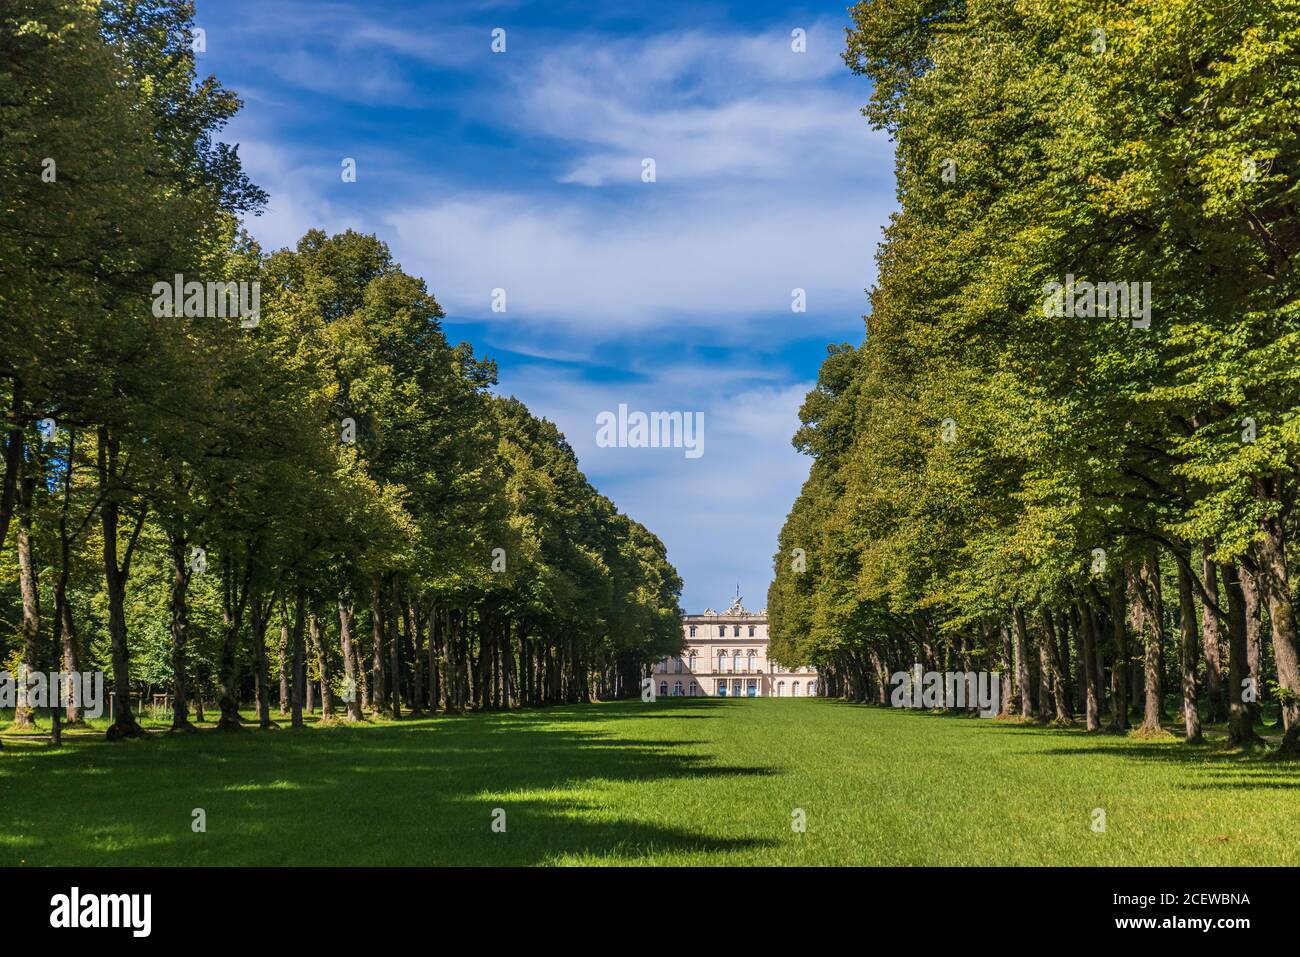 HERRENINSEL, GERMANIA - 31 agosto 2020: Palazzo Herrenchiemsee (Palazzo nuovo), uno dei castelli più famosi e il più grande di Re Ludovico II Foto Stock